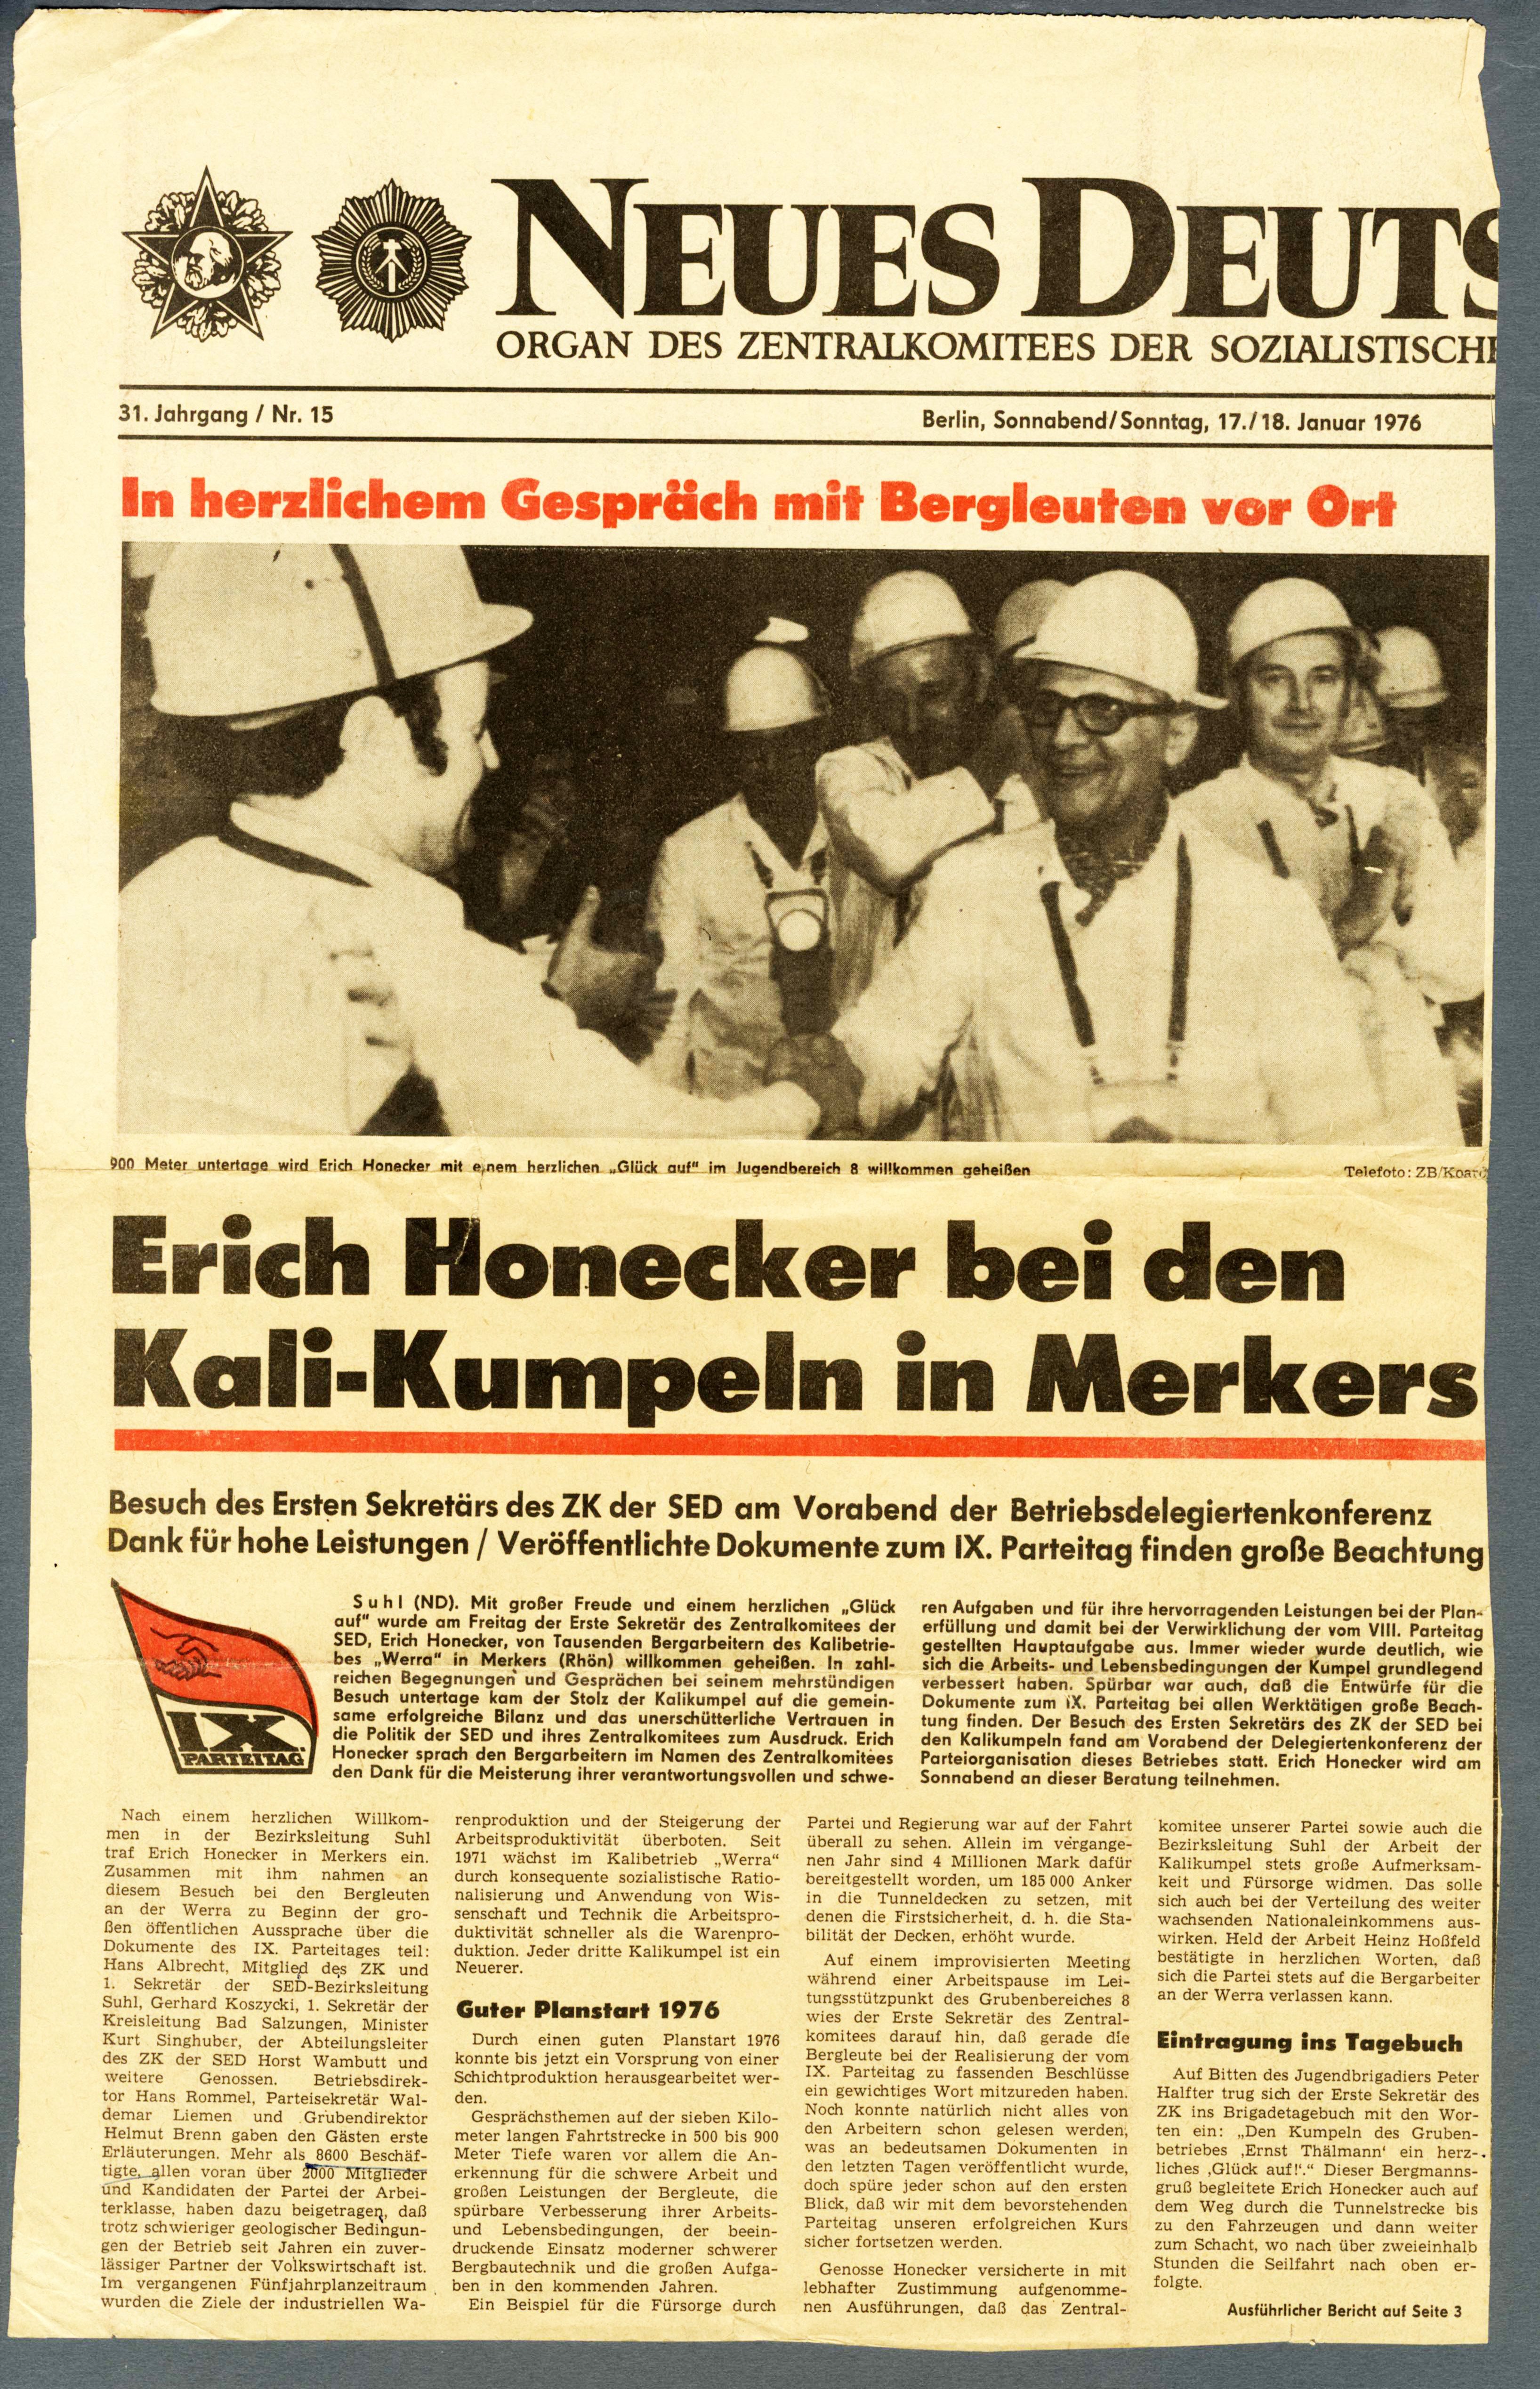 Zeitungsausschnitt "Erich Honecker bei den Kali-Kumpeln in Merkers" (Werra-Kalibergbau-Museum, Heringen/W. CC BY-NC-SA)